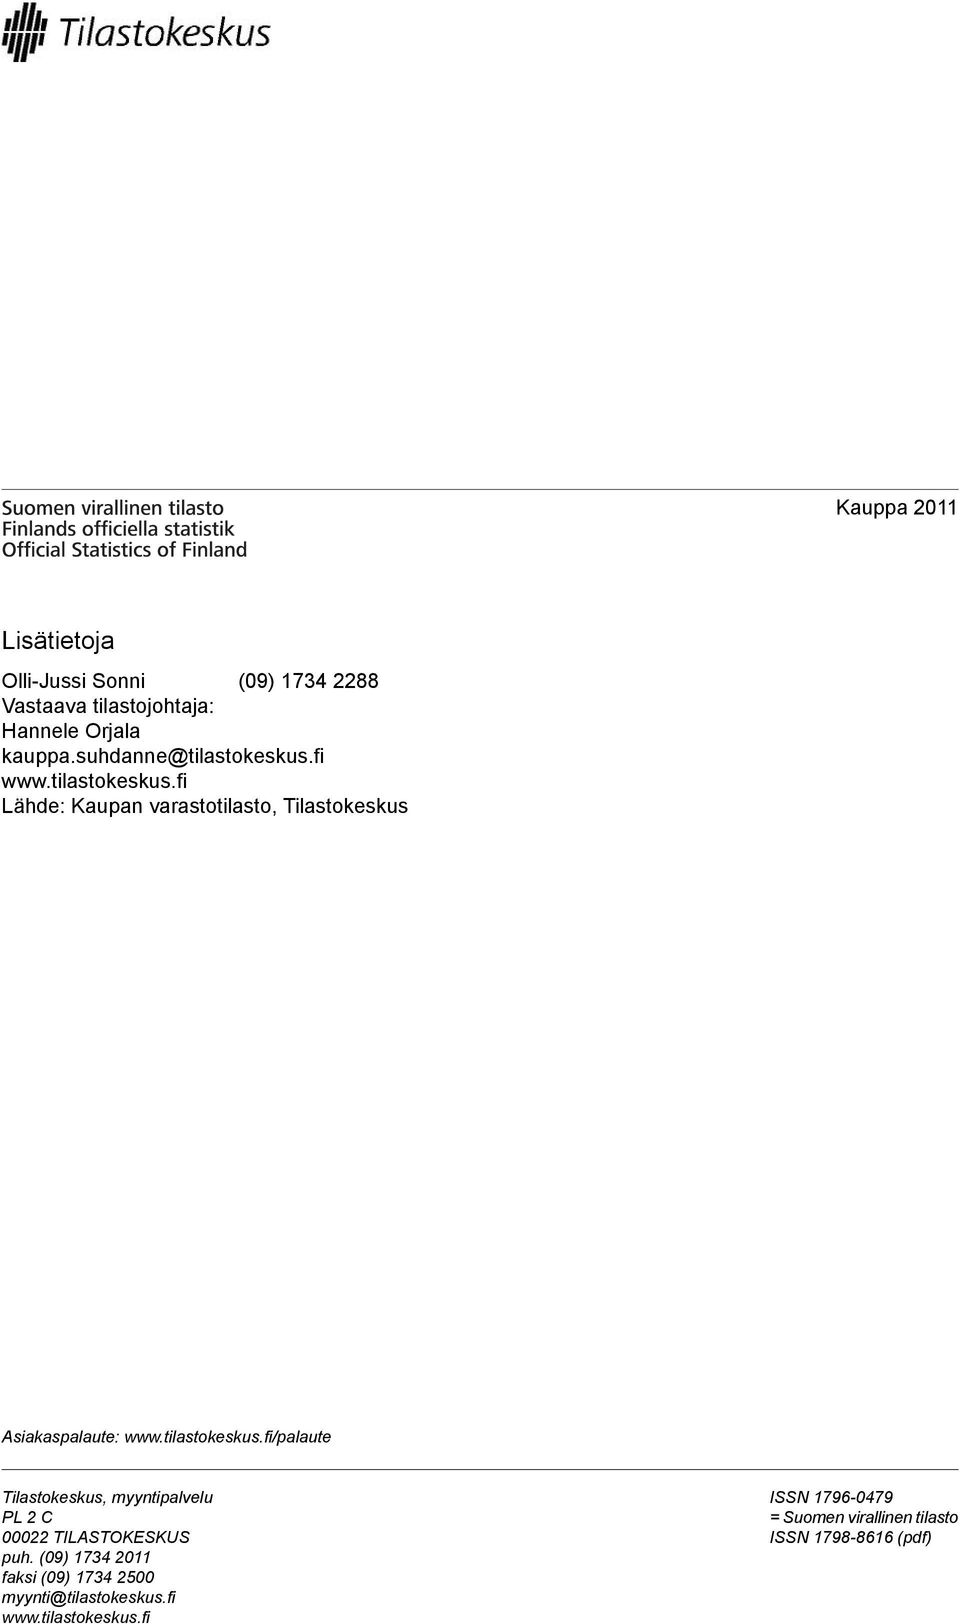 tilastokeskus.fi/palaute Tilastokeskus, myyntipalvelu PL 2 C 00022 TILASTOKESKUS puh.